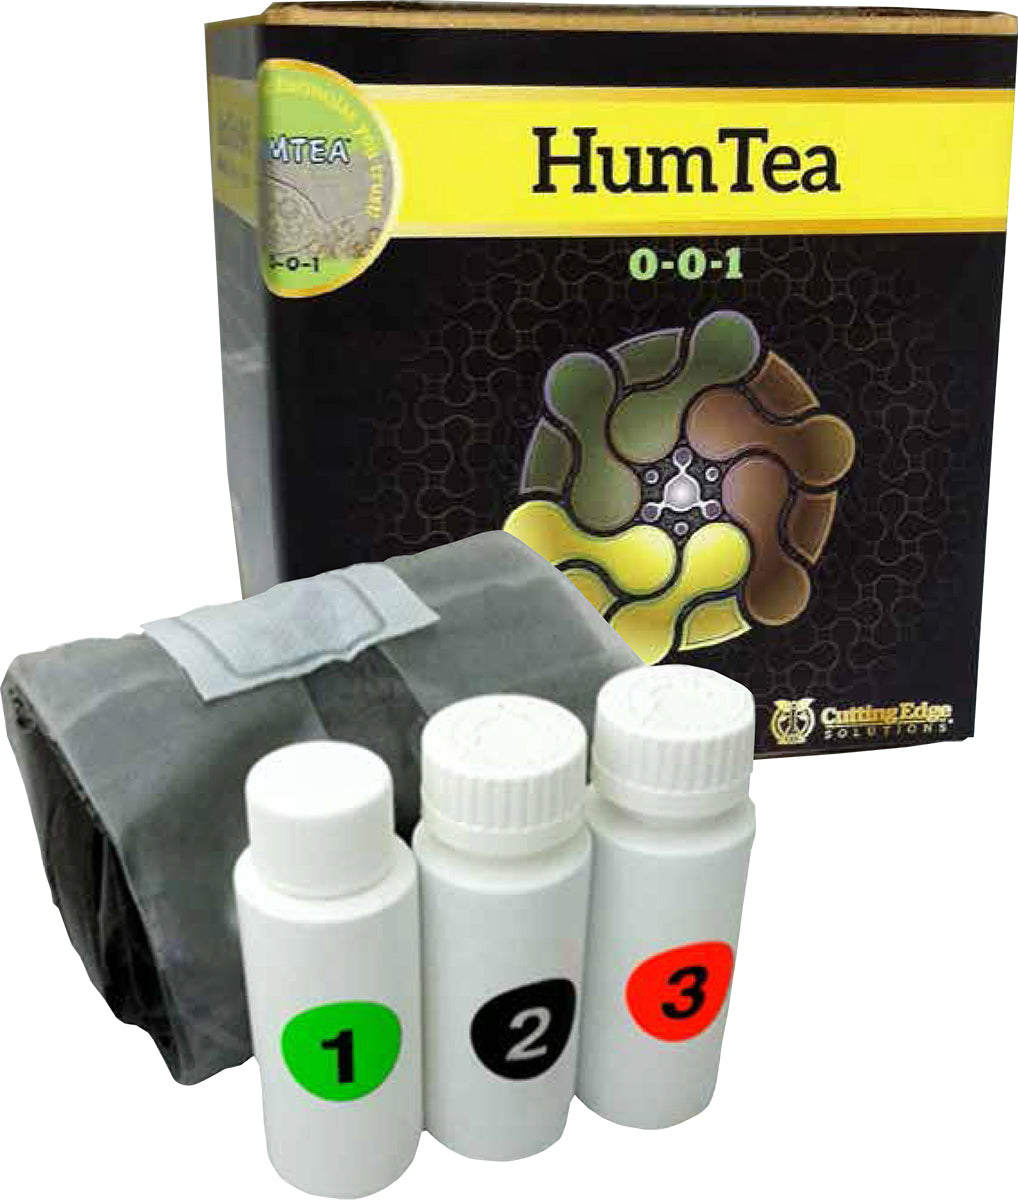 HumTea 5 Gal Brew Kit